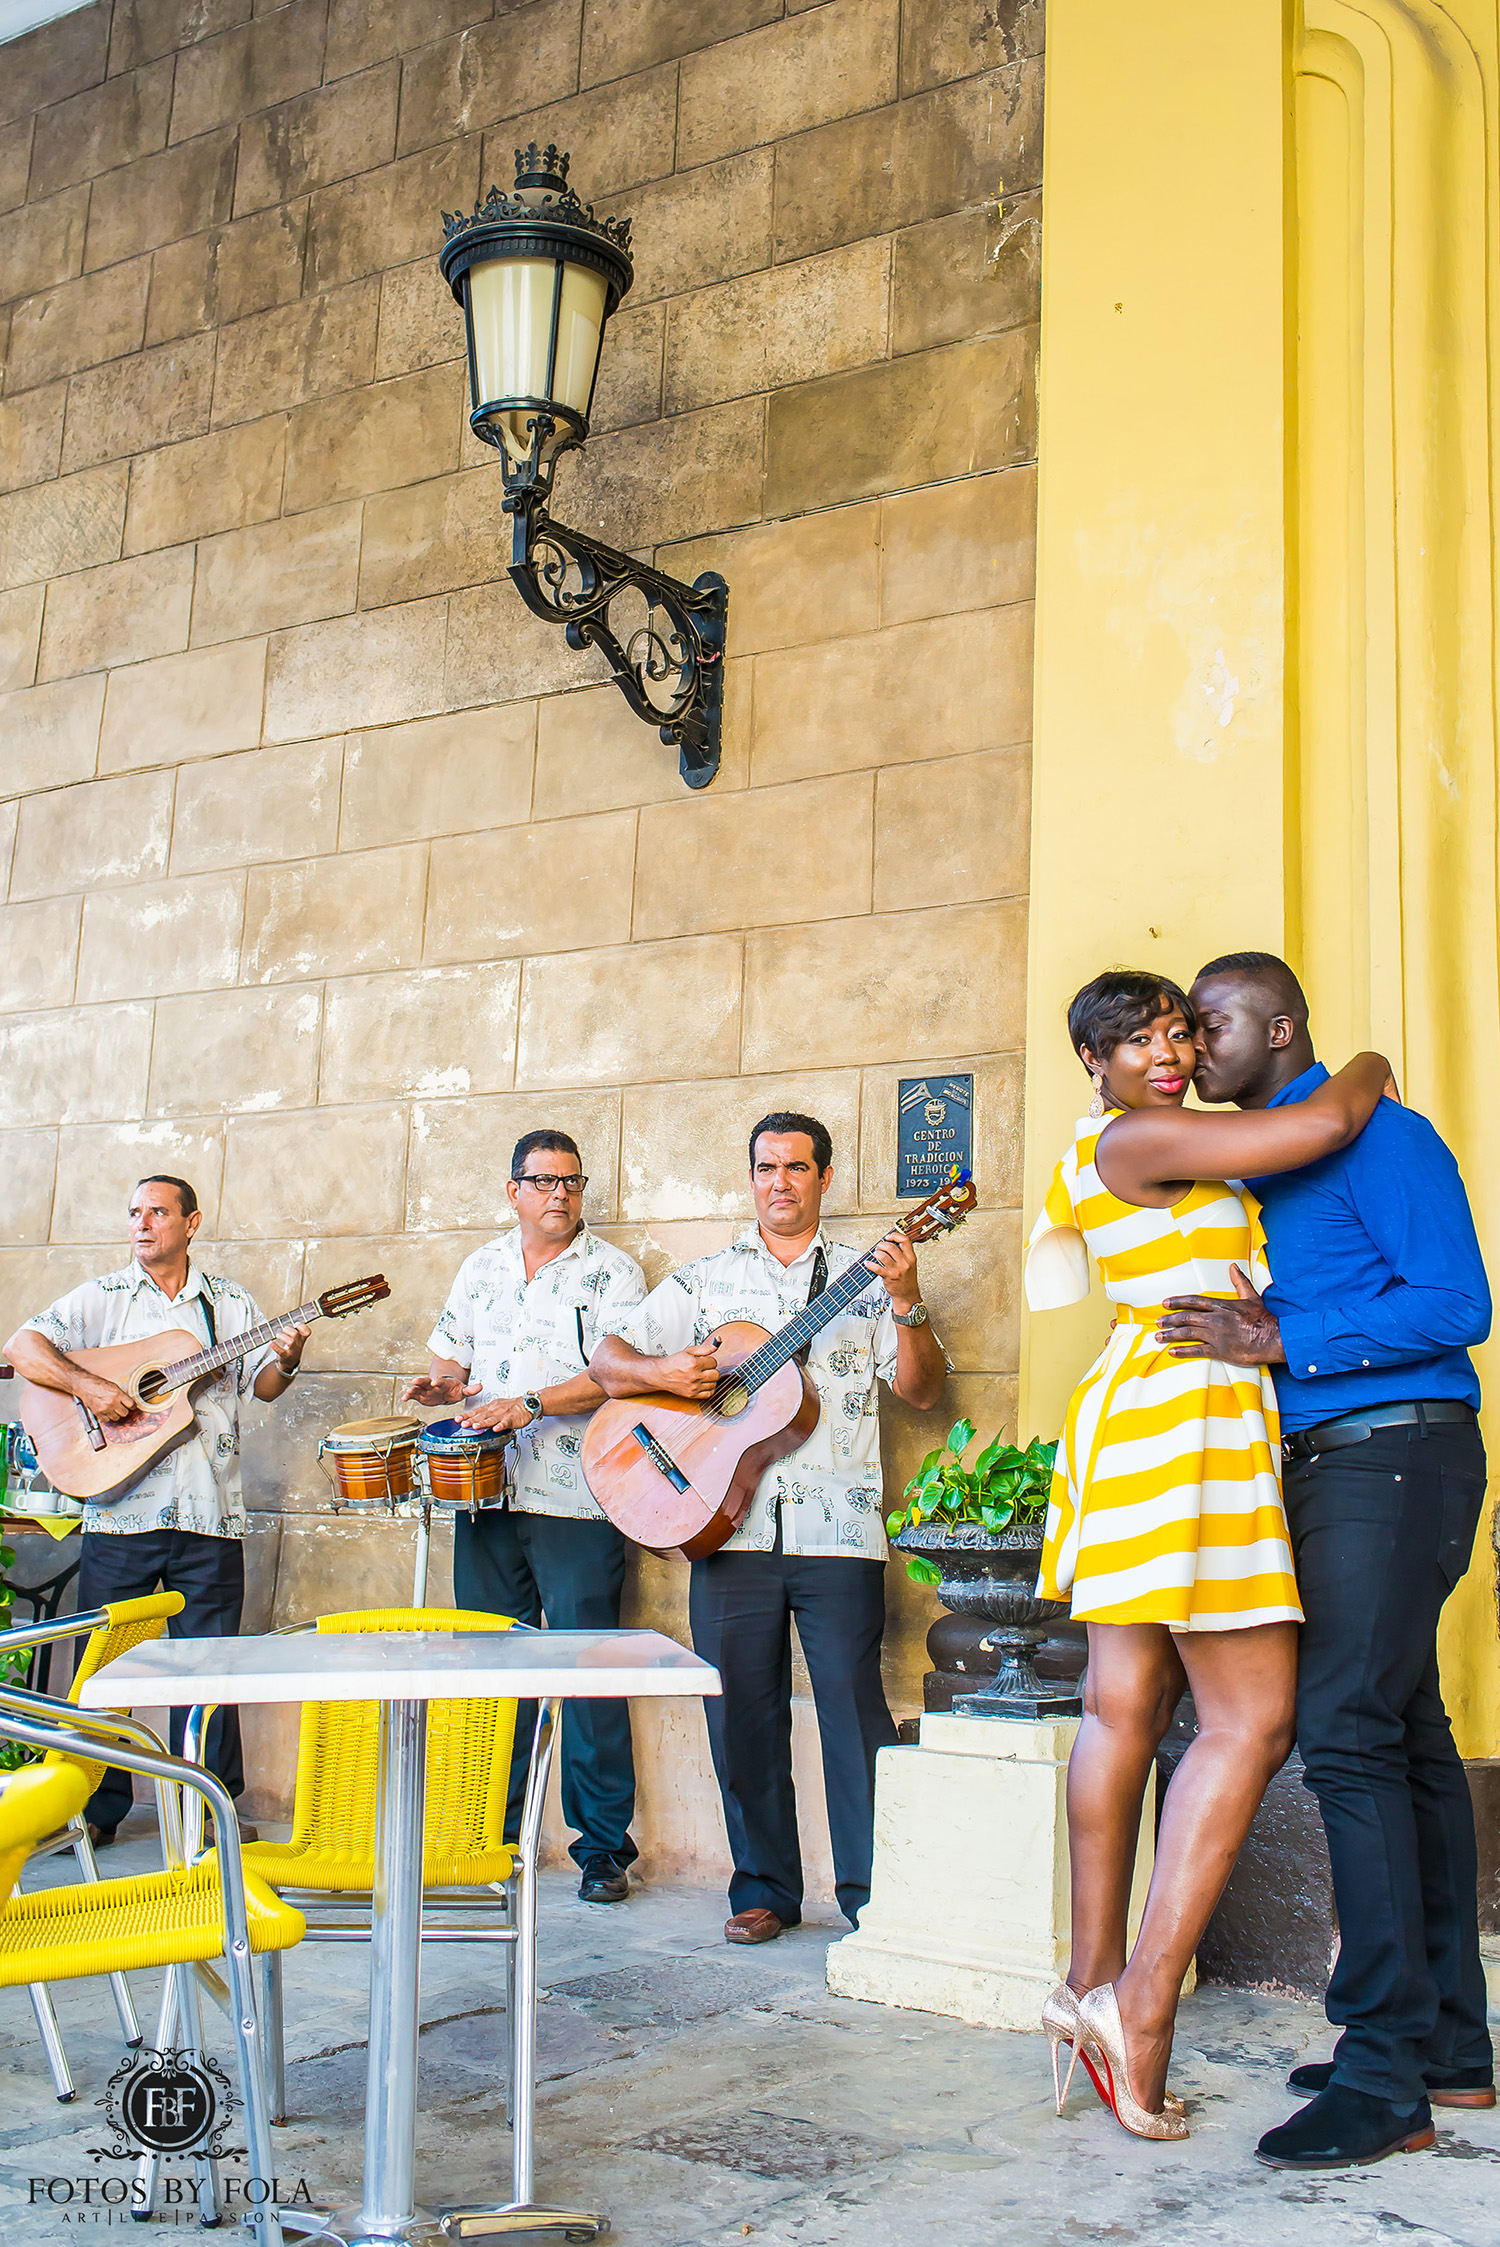 Fotos by Fola | Atlanta Wedding Photographer | Destination Wedding Photographer | Havana Cuba Engagement Shoot | La Guarida | Havana Cathedral | Santa María | Ciudad De La Habana | Cuba | Old Havana